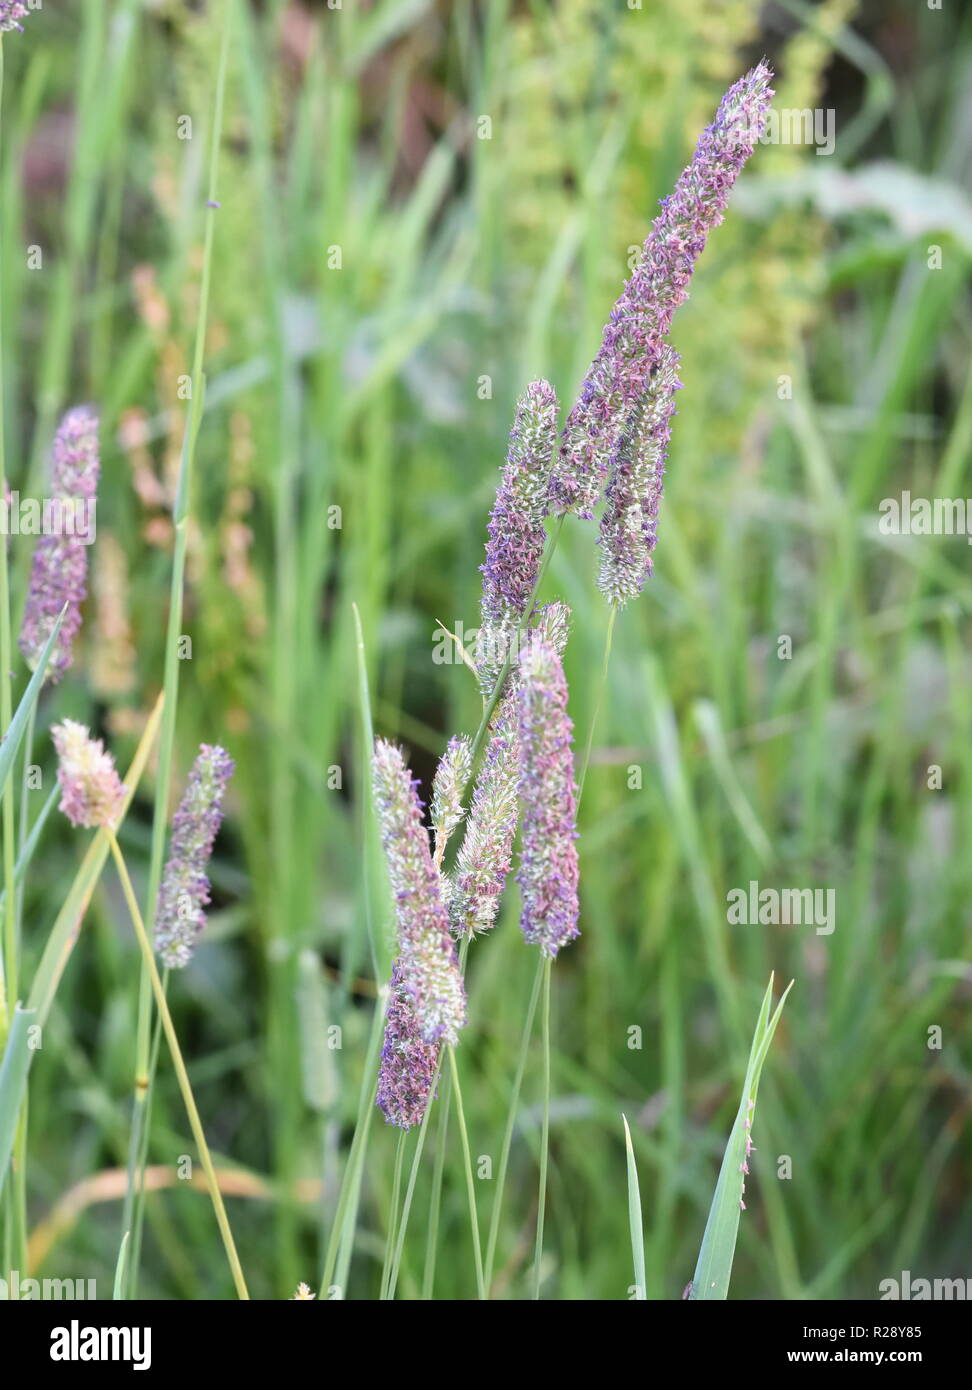 Foxtail grass full of pollen Stock Photo